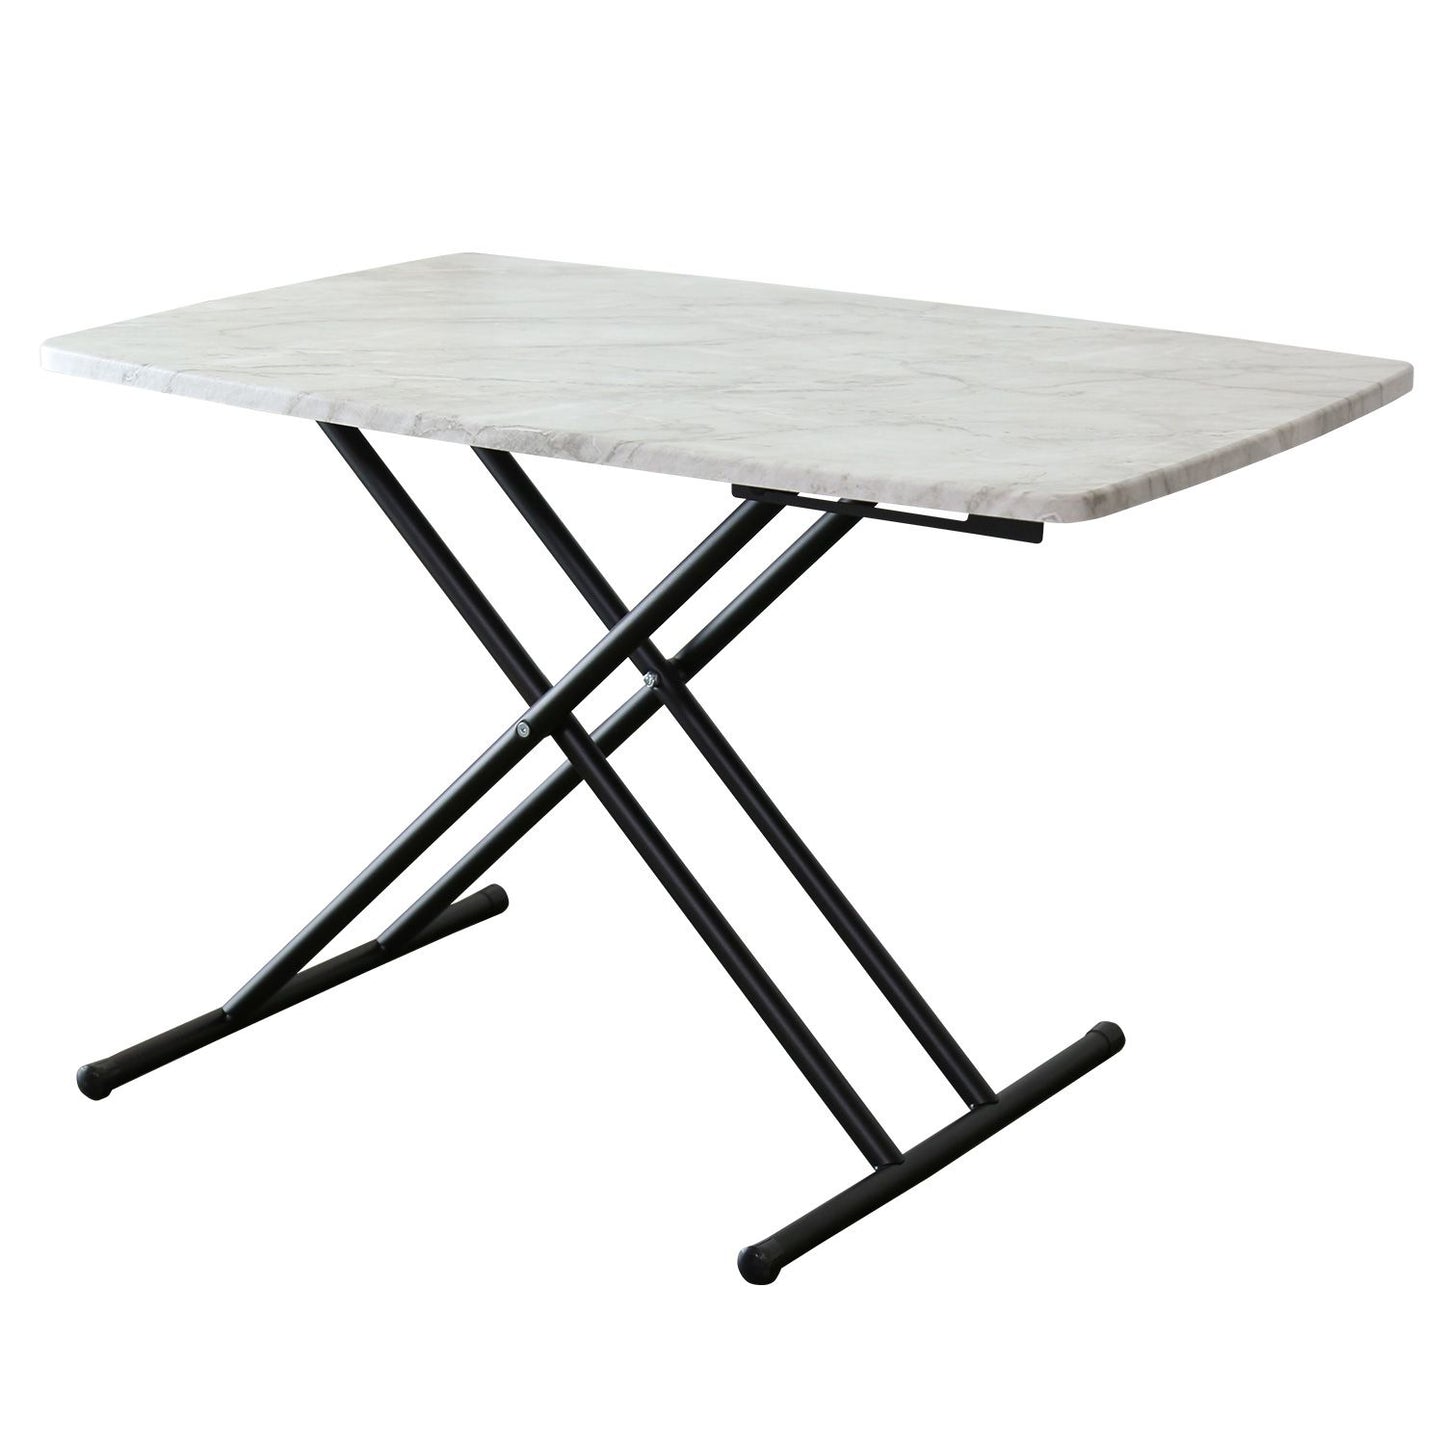 【幅85】 昇降テーブル リフティングテーブル 5段階調整 完成品 トリトン 85×55